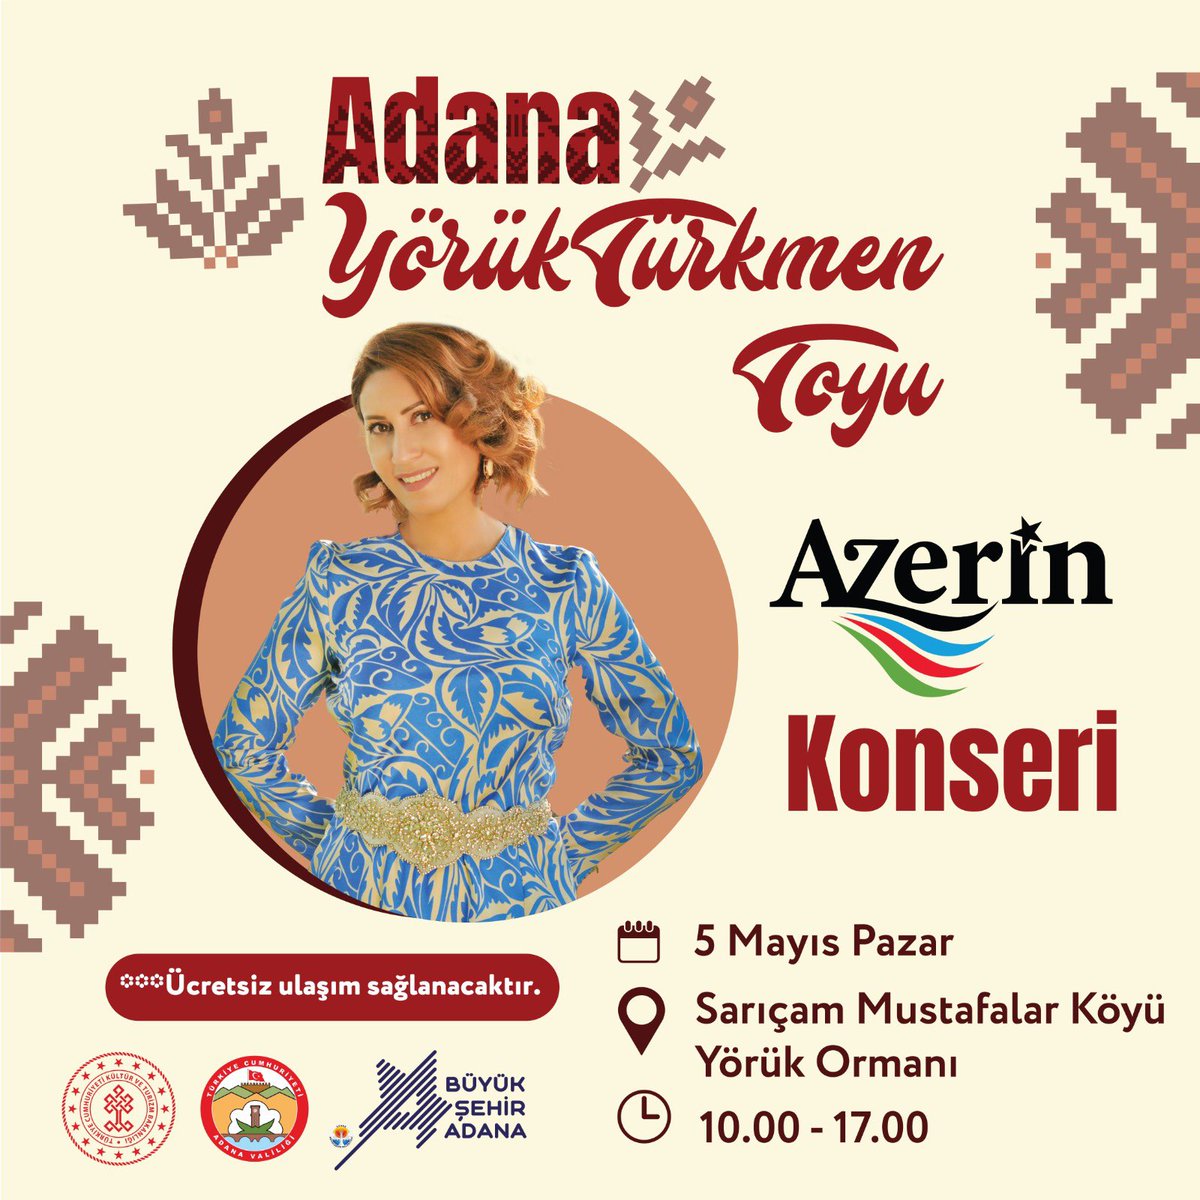 Adana Yörük Türkmen Toyu etkinlikleri kapsamında düzenleyeceğimiz Azerin konserine tüm vatandaşlarımızı bekliyoruz. 📅 5 Mayıs Pazar (Yarın) 🕙 10.00-17.00 📍 Sarıçam Mustafalar Köyü Yörük Ormanı